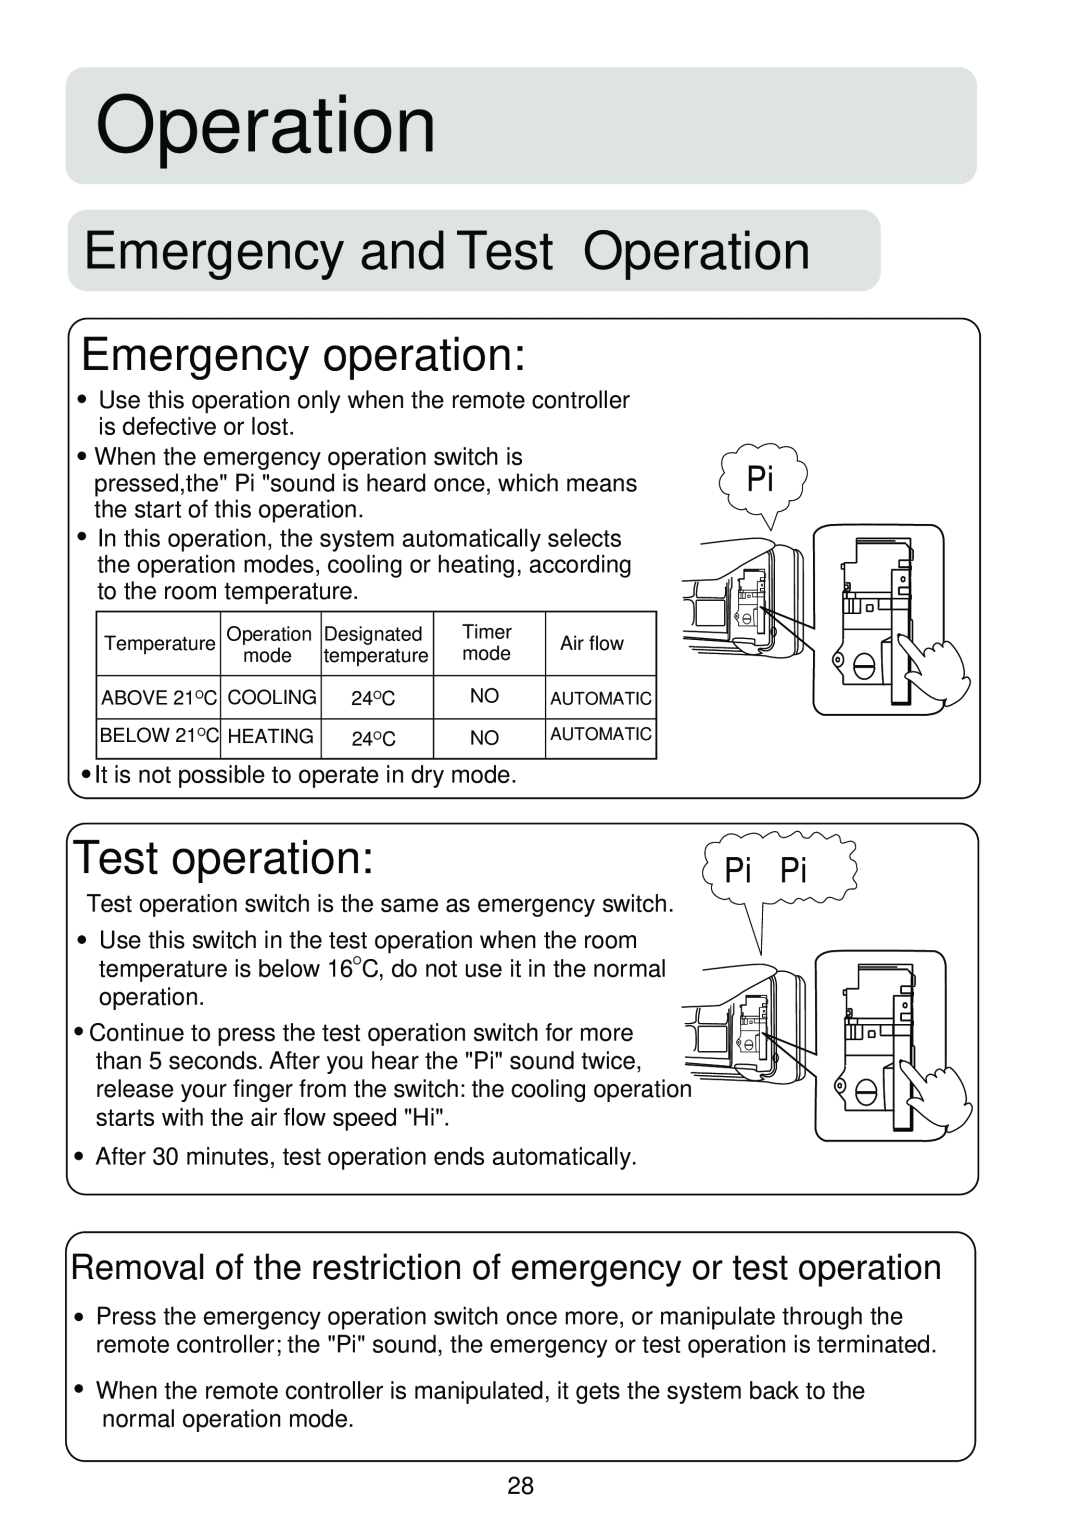 Haier HSU-09R04, HSU-12R04, HSU-18R04, HSU-24R04 Emergency and Test Operation, Emergency operation, Test operation 